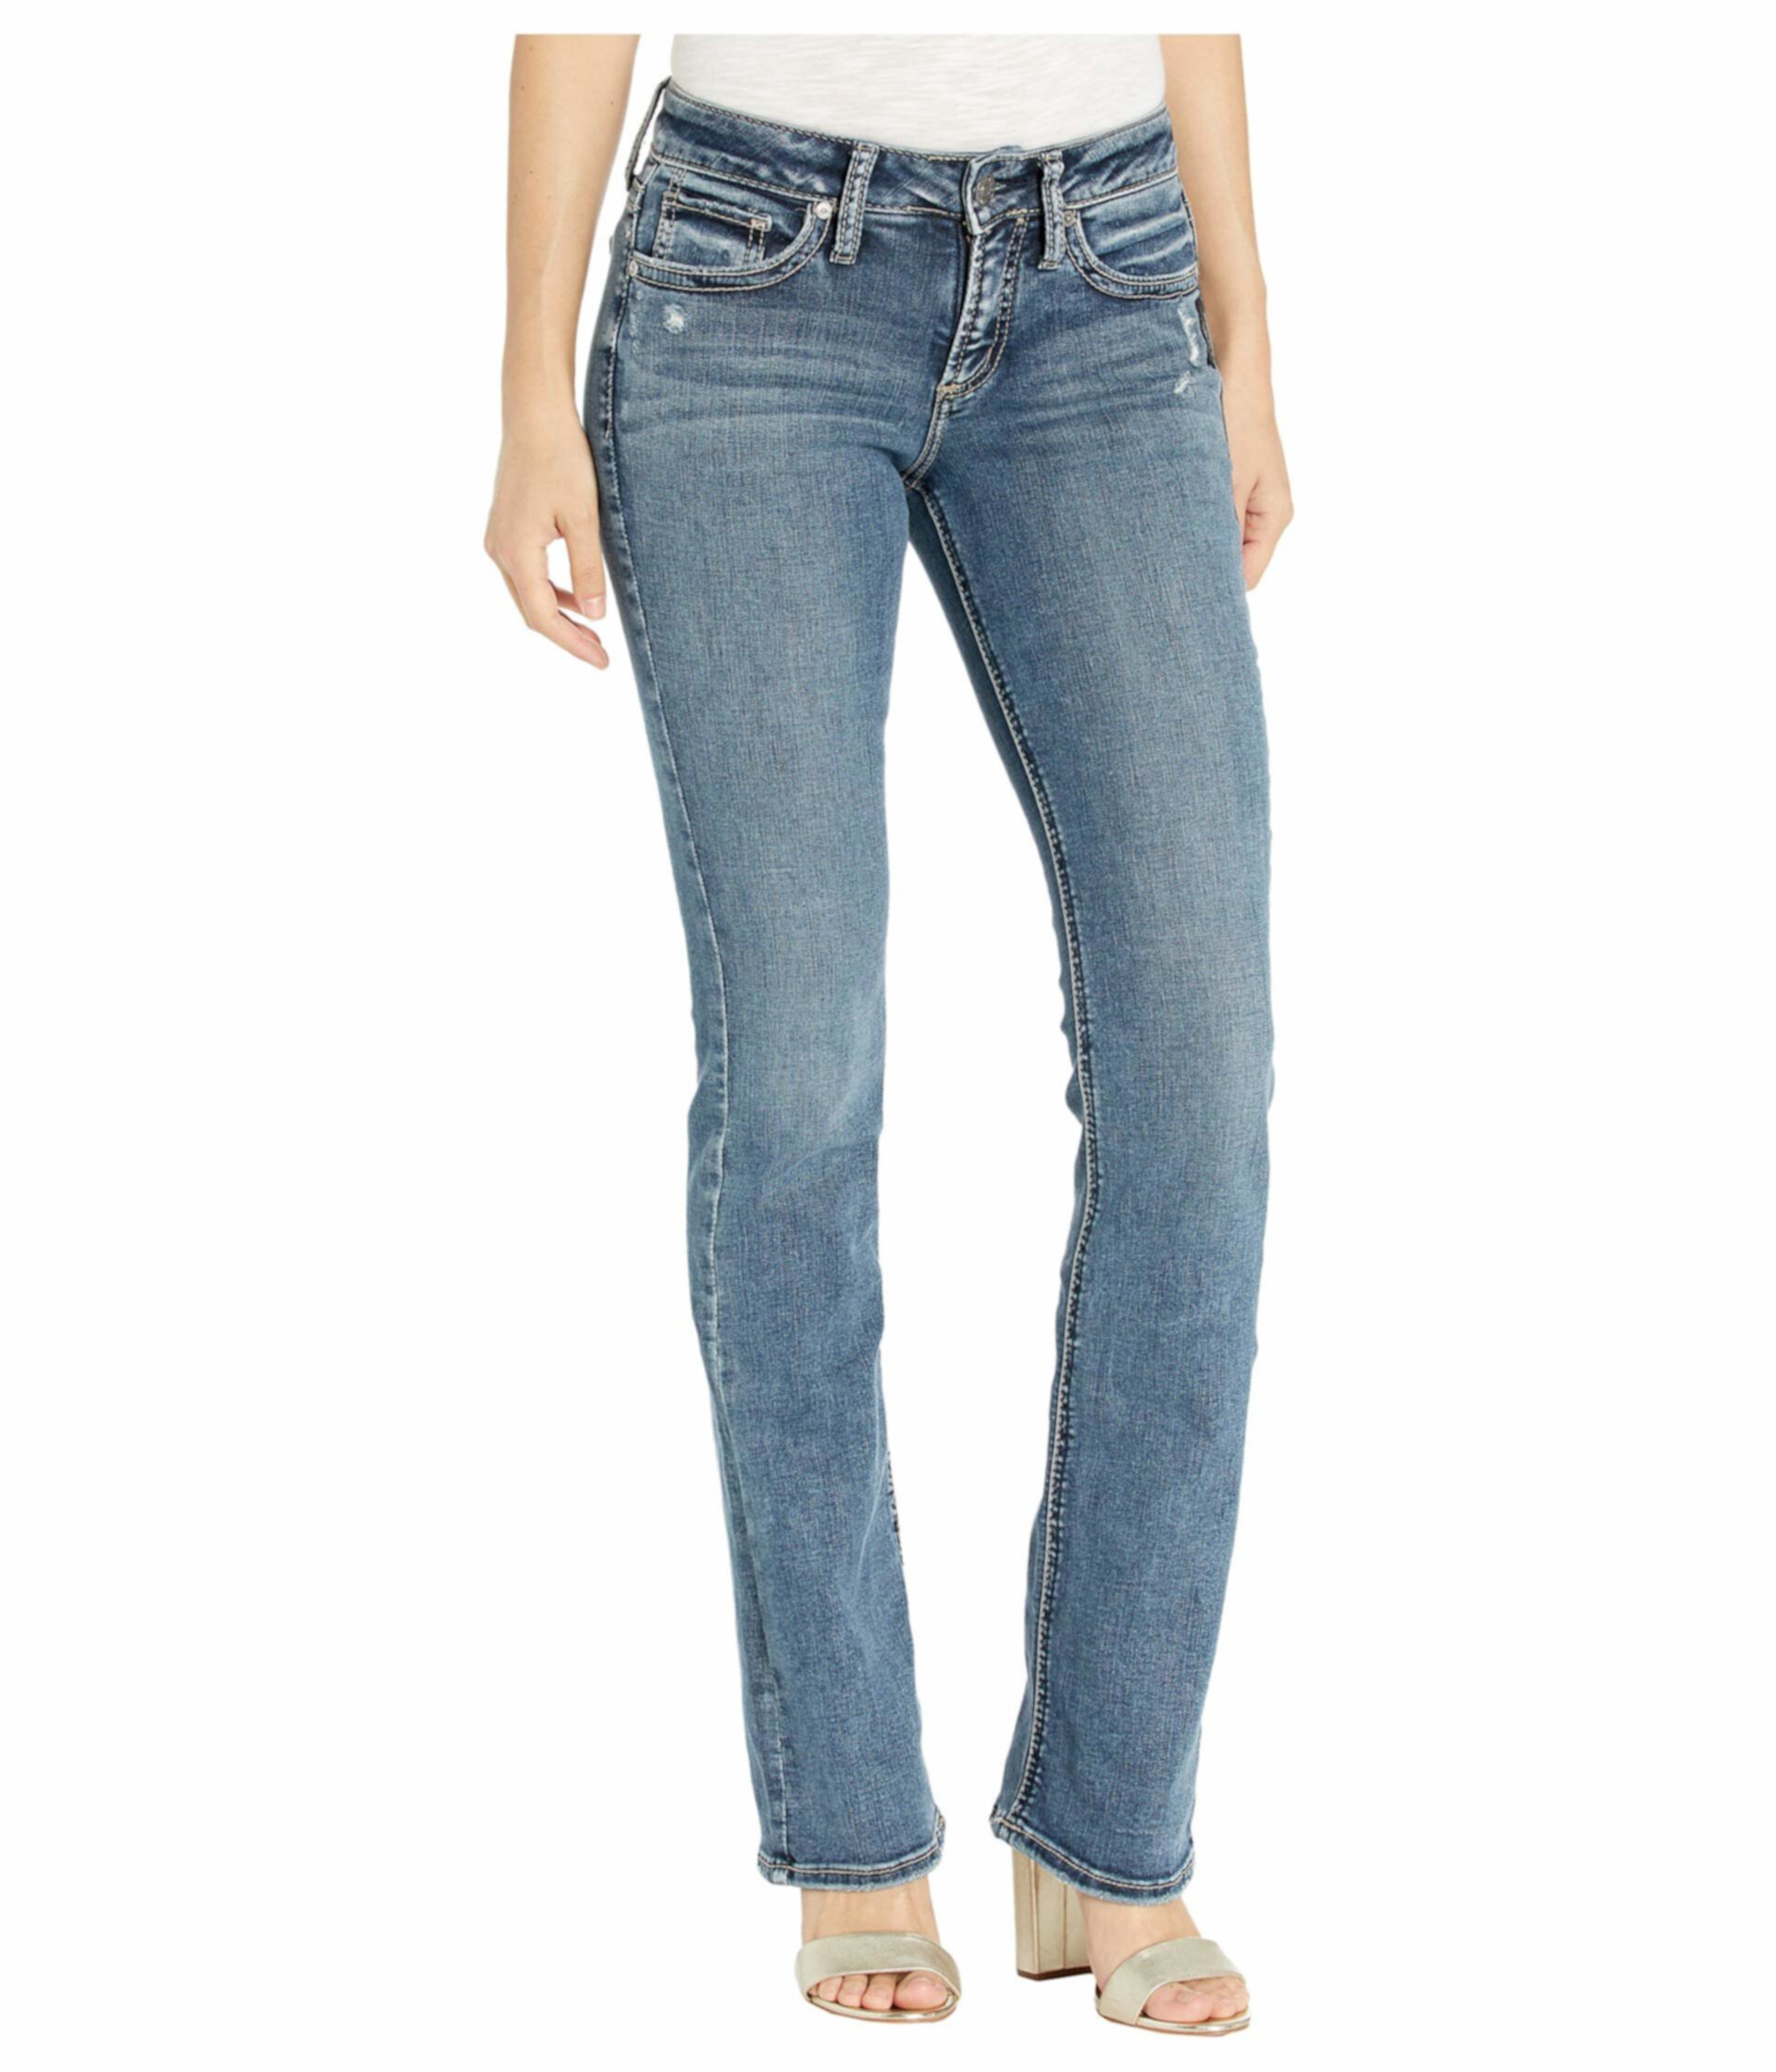 Узкие джинсы-кроссовки Suki со средней посадкой в цвете Индиго L93606SDG366 Silver Jeans Co.